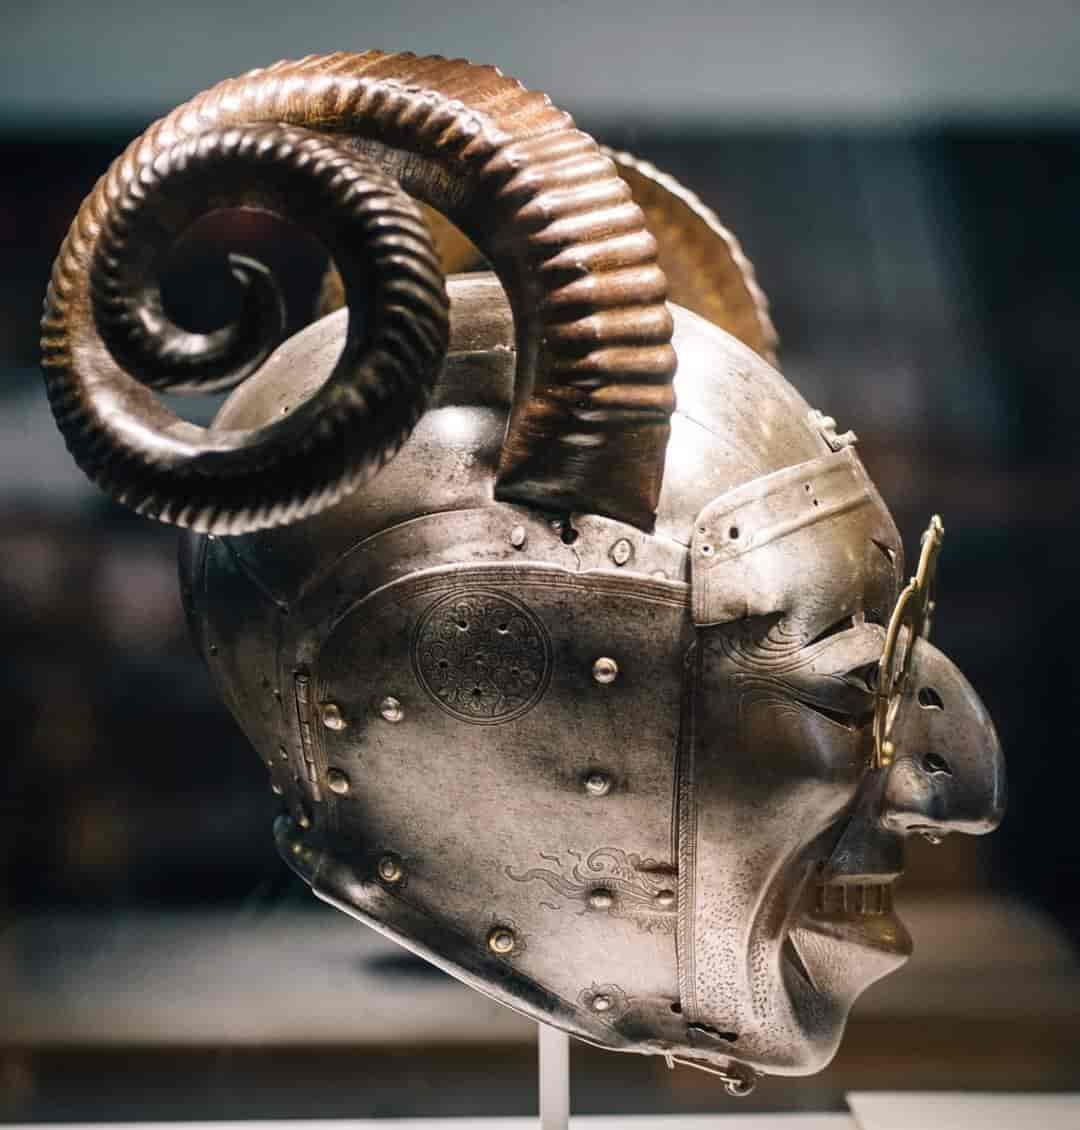 Le casque à cornes d'Henri VIII, seul survivant d'une armure complète fabriquée par Konrad Seusenhofer entre 1511 et 1514. L'armure était un cadeau de l'empereur romain germanique Maximilien Ier au roi d'Angleterre Henri VIII, suite à leur alliance dans la guerre de la Ligue de Cambrai.